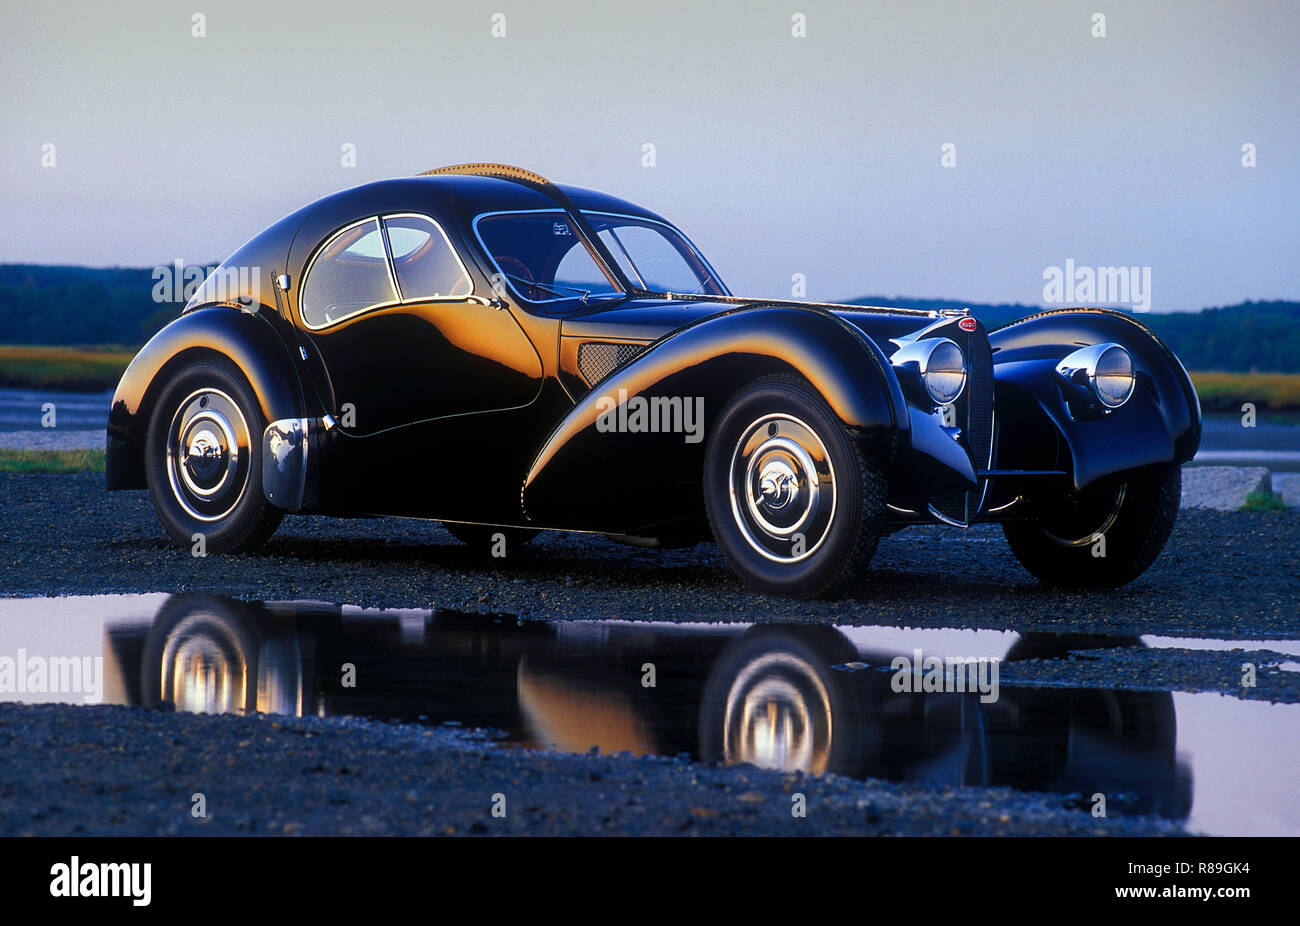 1938 bugatti 57sc atlantic coupe